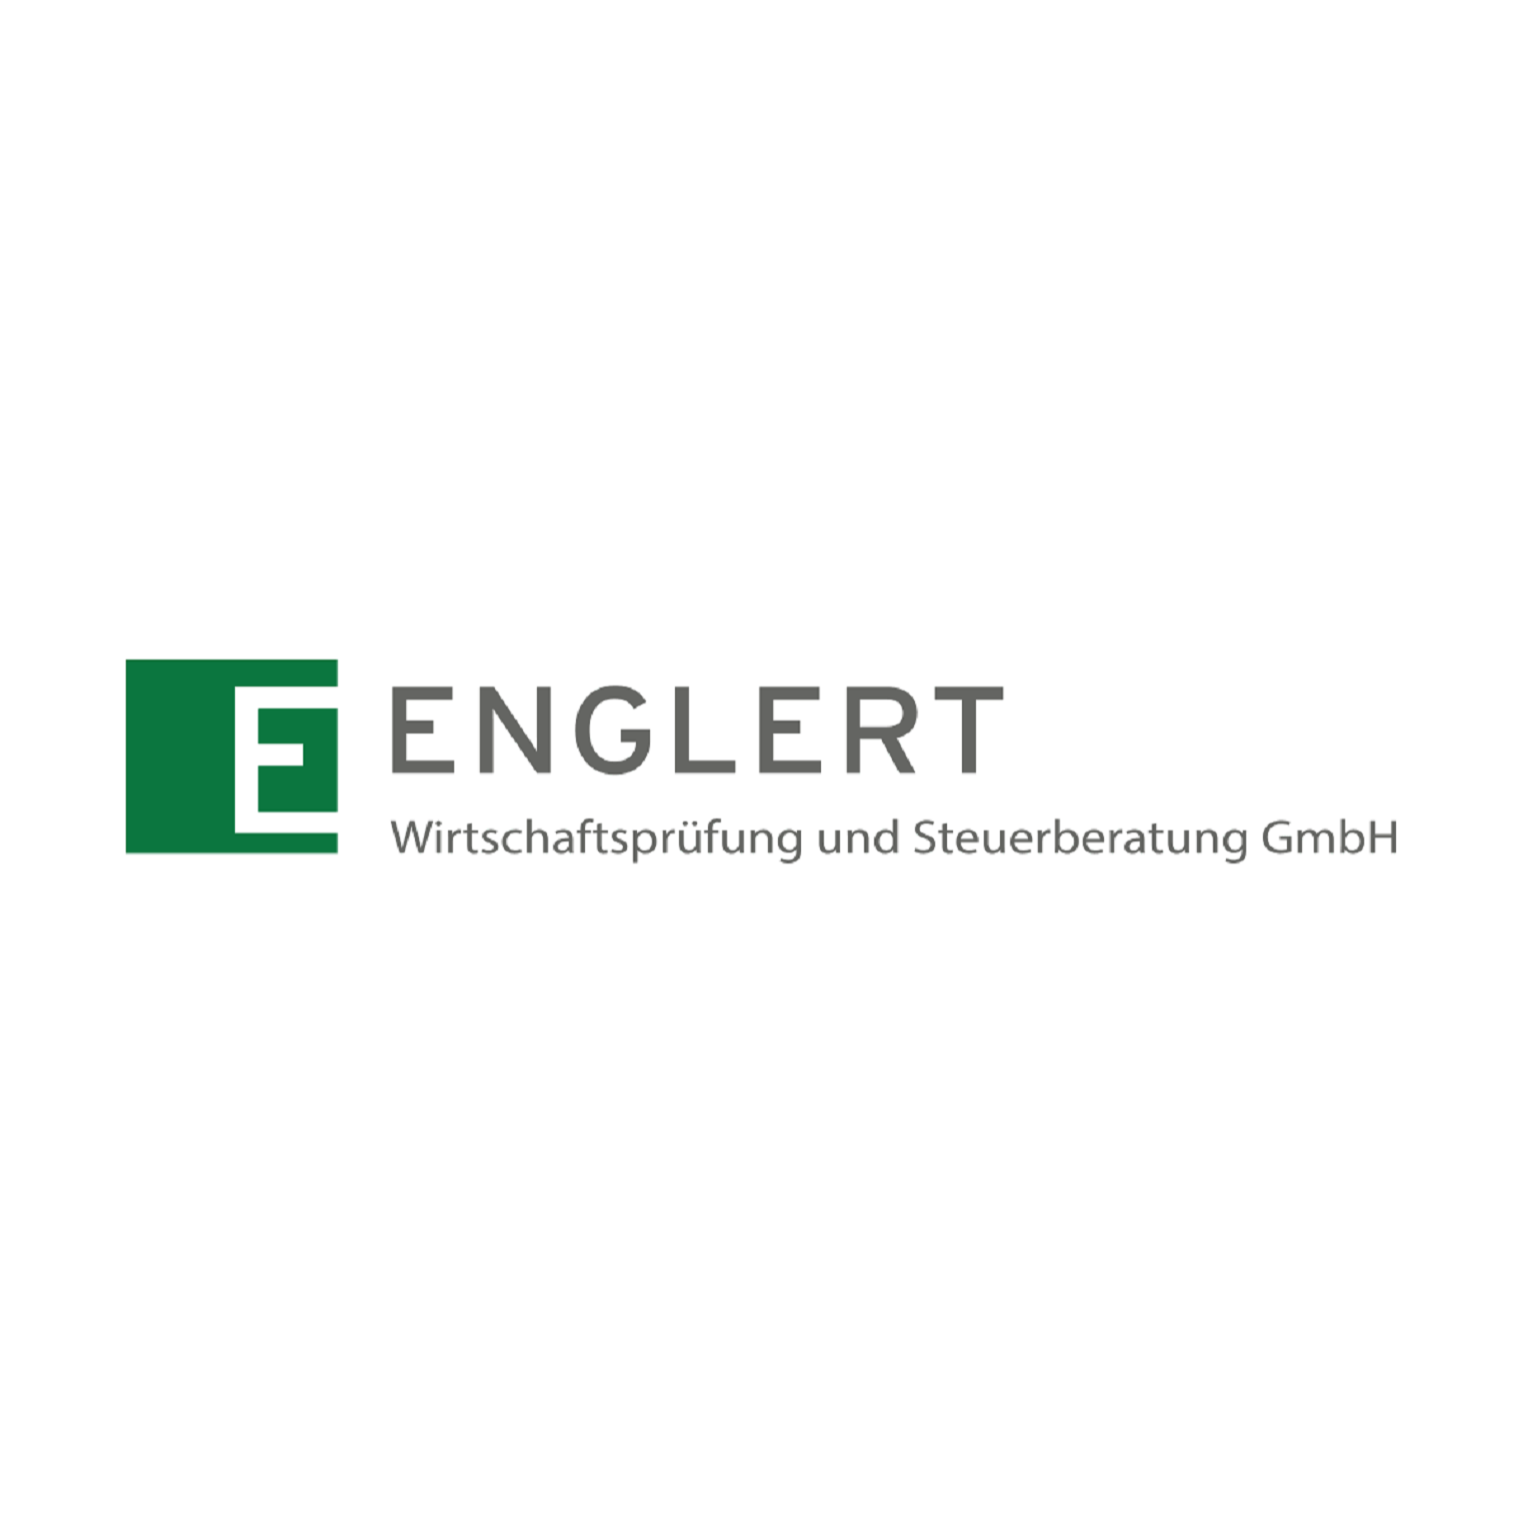 Englert Wirtschaftsprüfung und Steuerberatung GmbH Logo